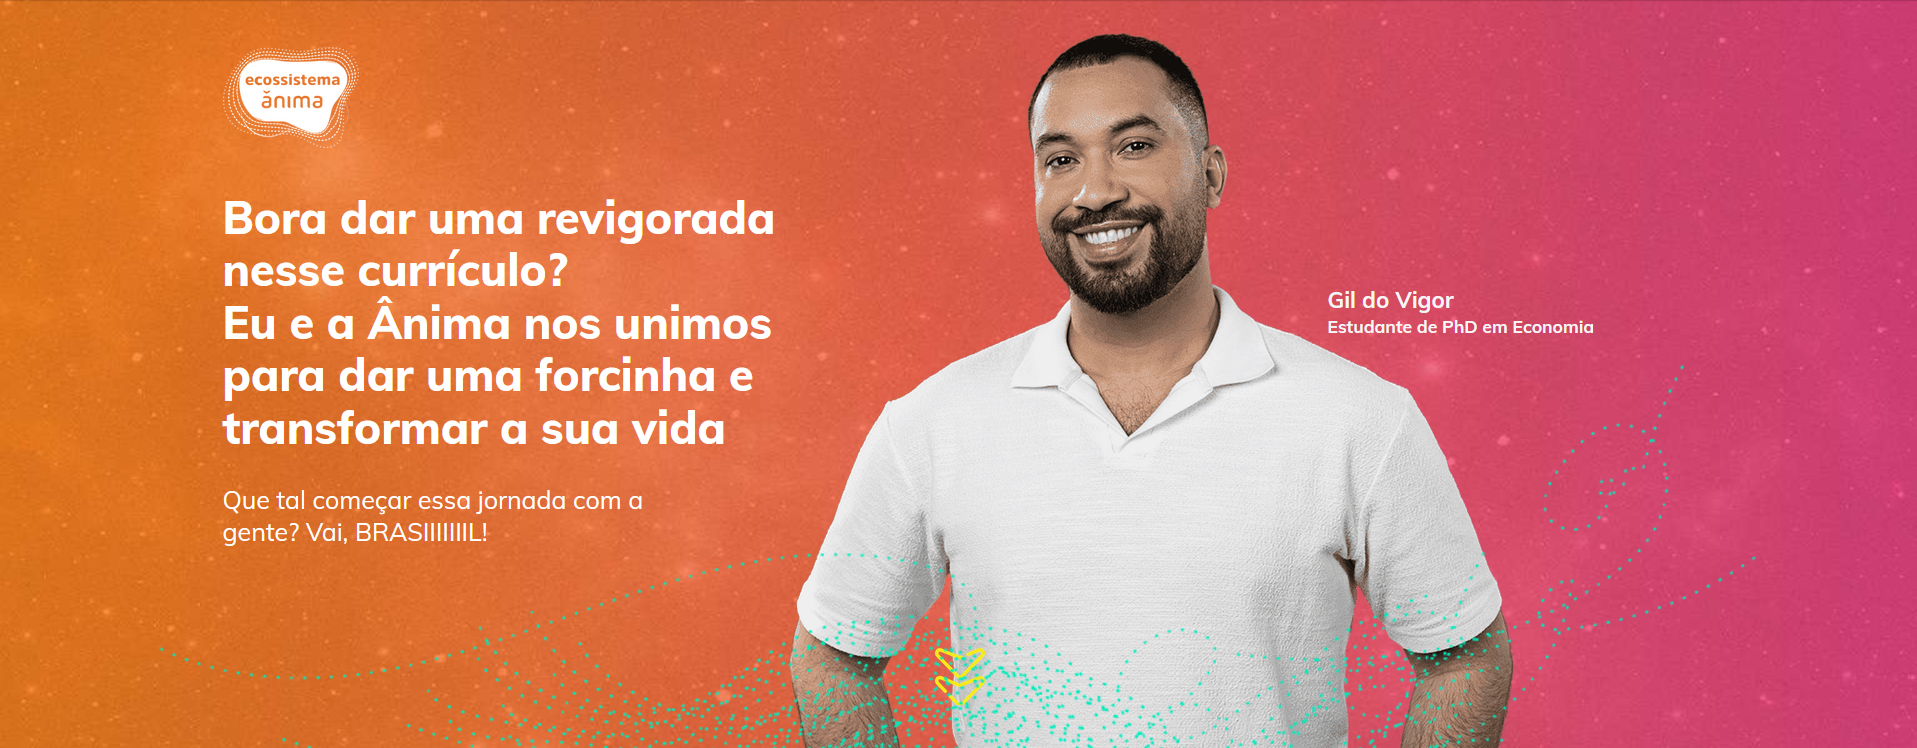 Unifacs traz Gil Do Vigor como embaixador em Campanha assinada pela Garage